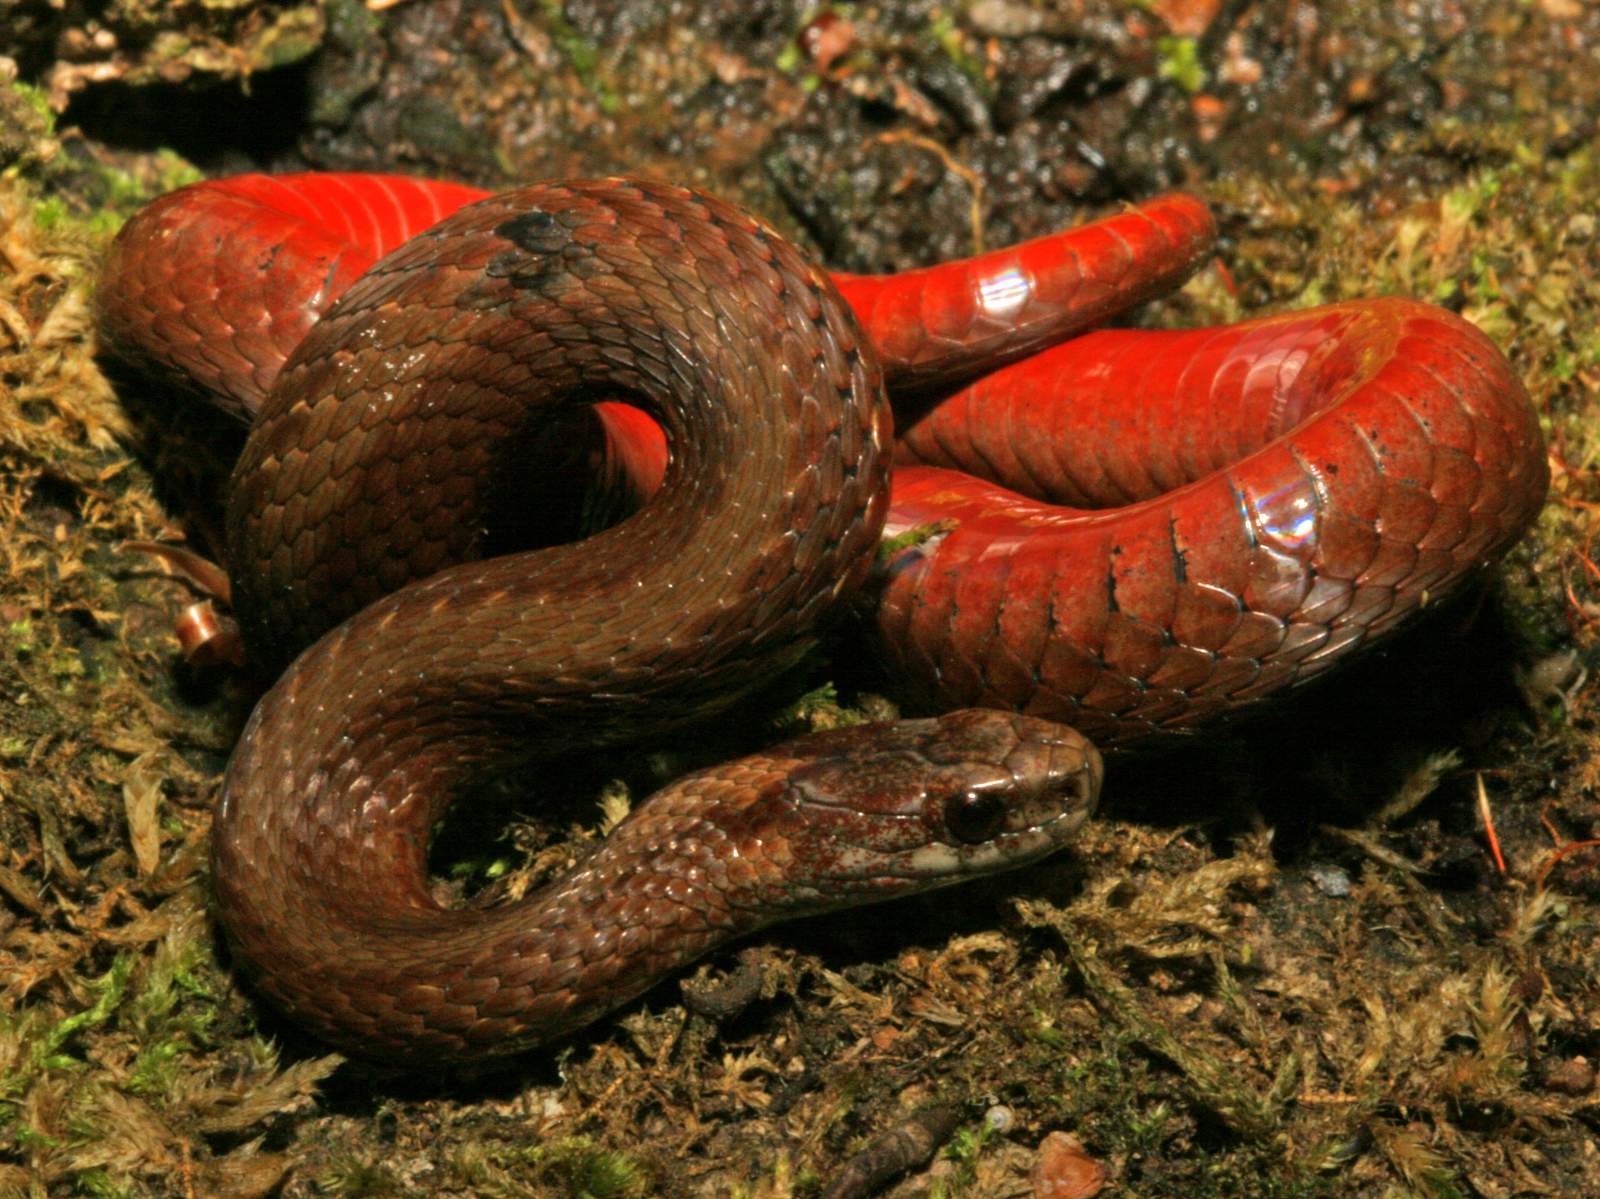 http://www.fllt.org/wp-content/uploads/2015/09/Red-Bellied_snake.Dick_Bartlett1.jpg